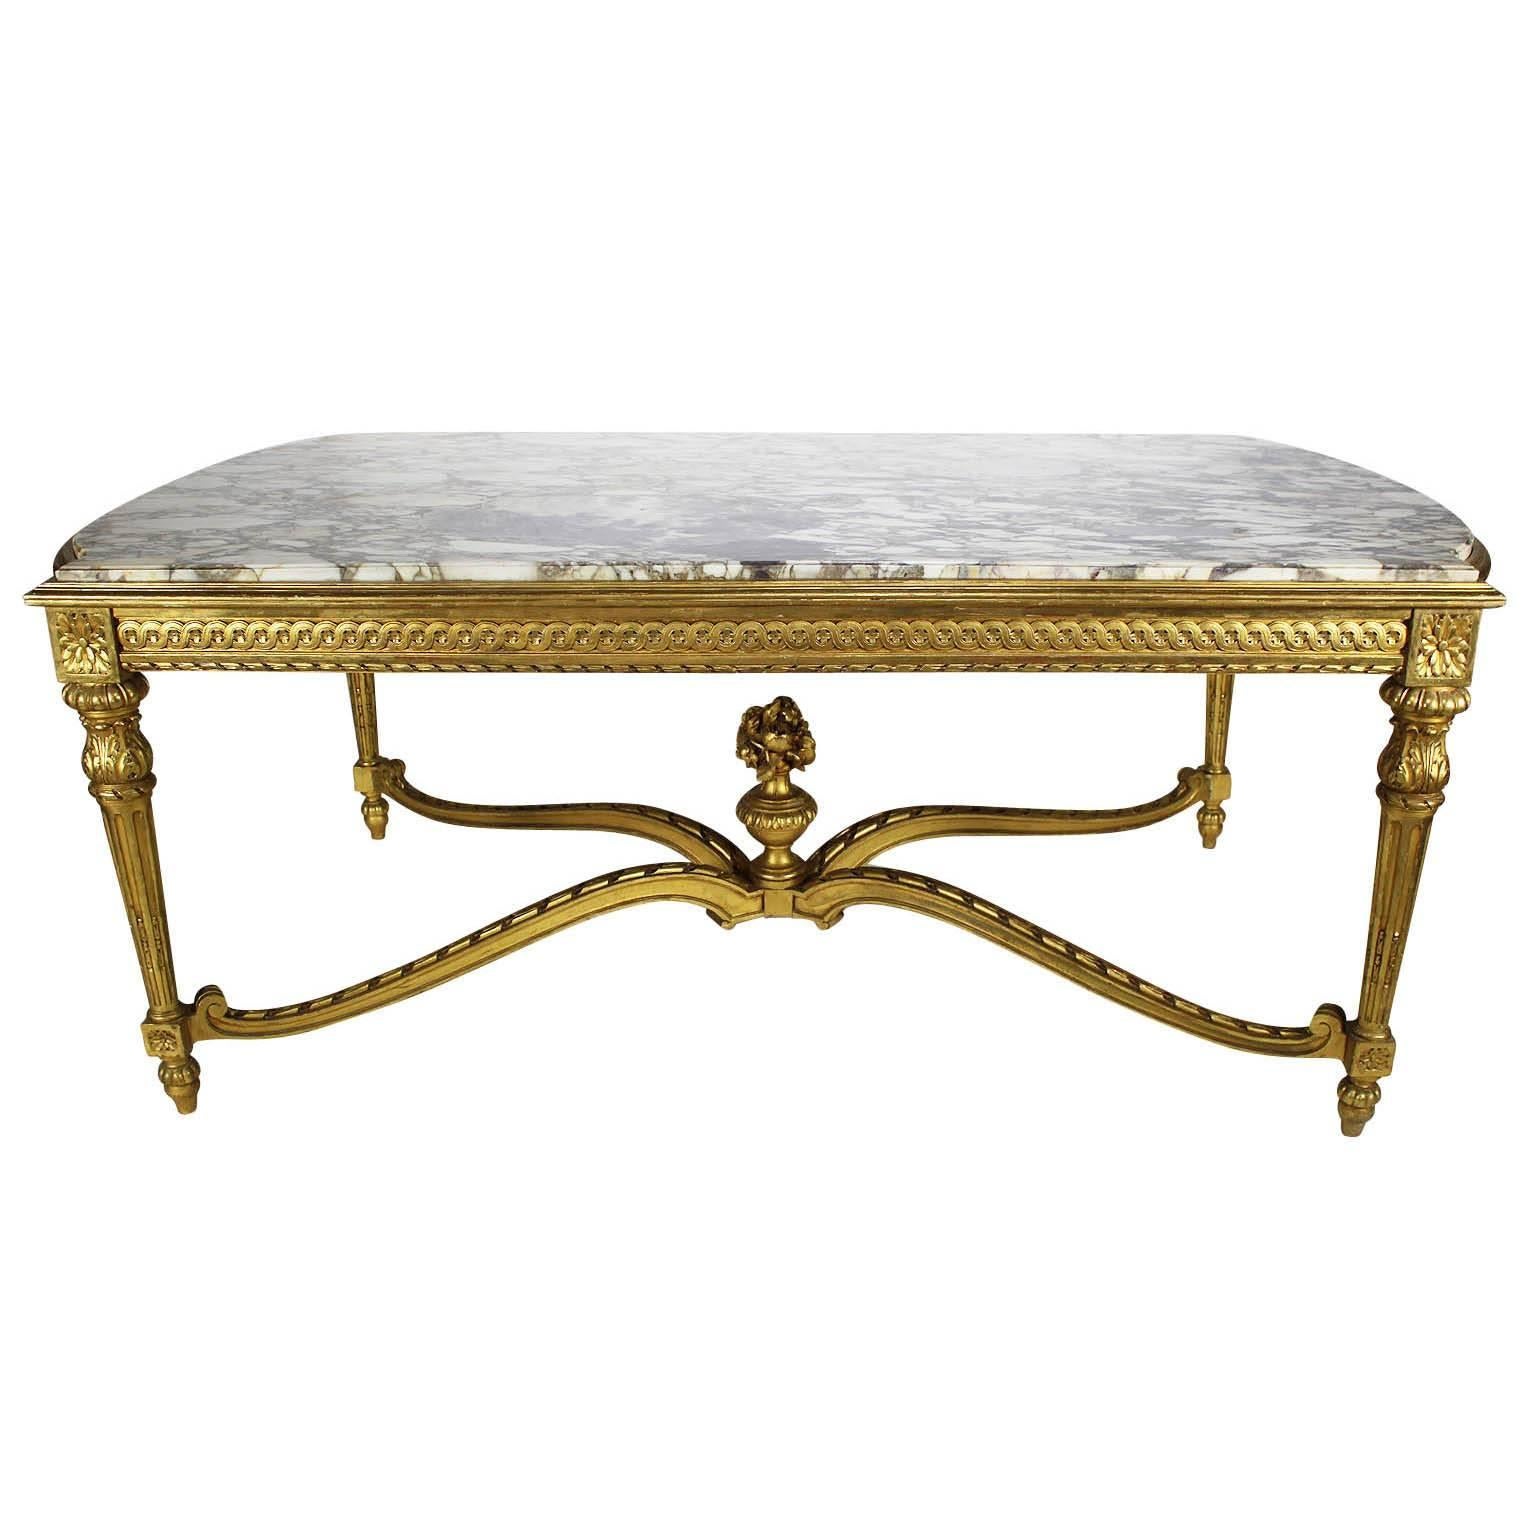 Eine sehr feine und große Französisch 19. Jahrhundert Louis XVI-Stil vergoldet geschnitzt Mitte Halle Tisch mit Marmorplatte. Die rechteckige Platte mit abgerundeten Enden ist mit einer Marmorplatte aus Brêche Violette versehen und steht auf vier